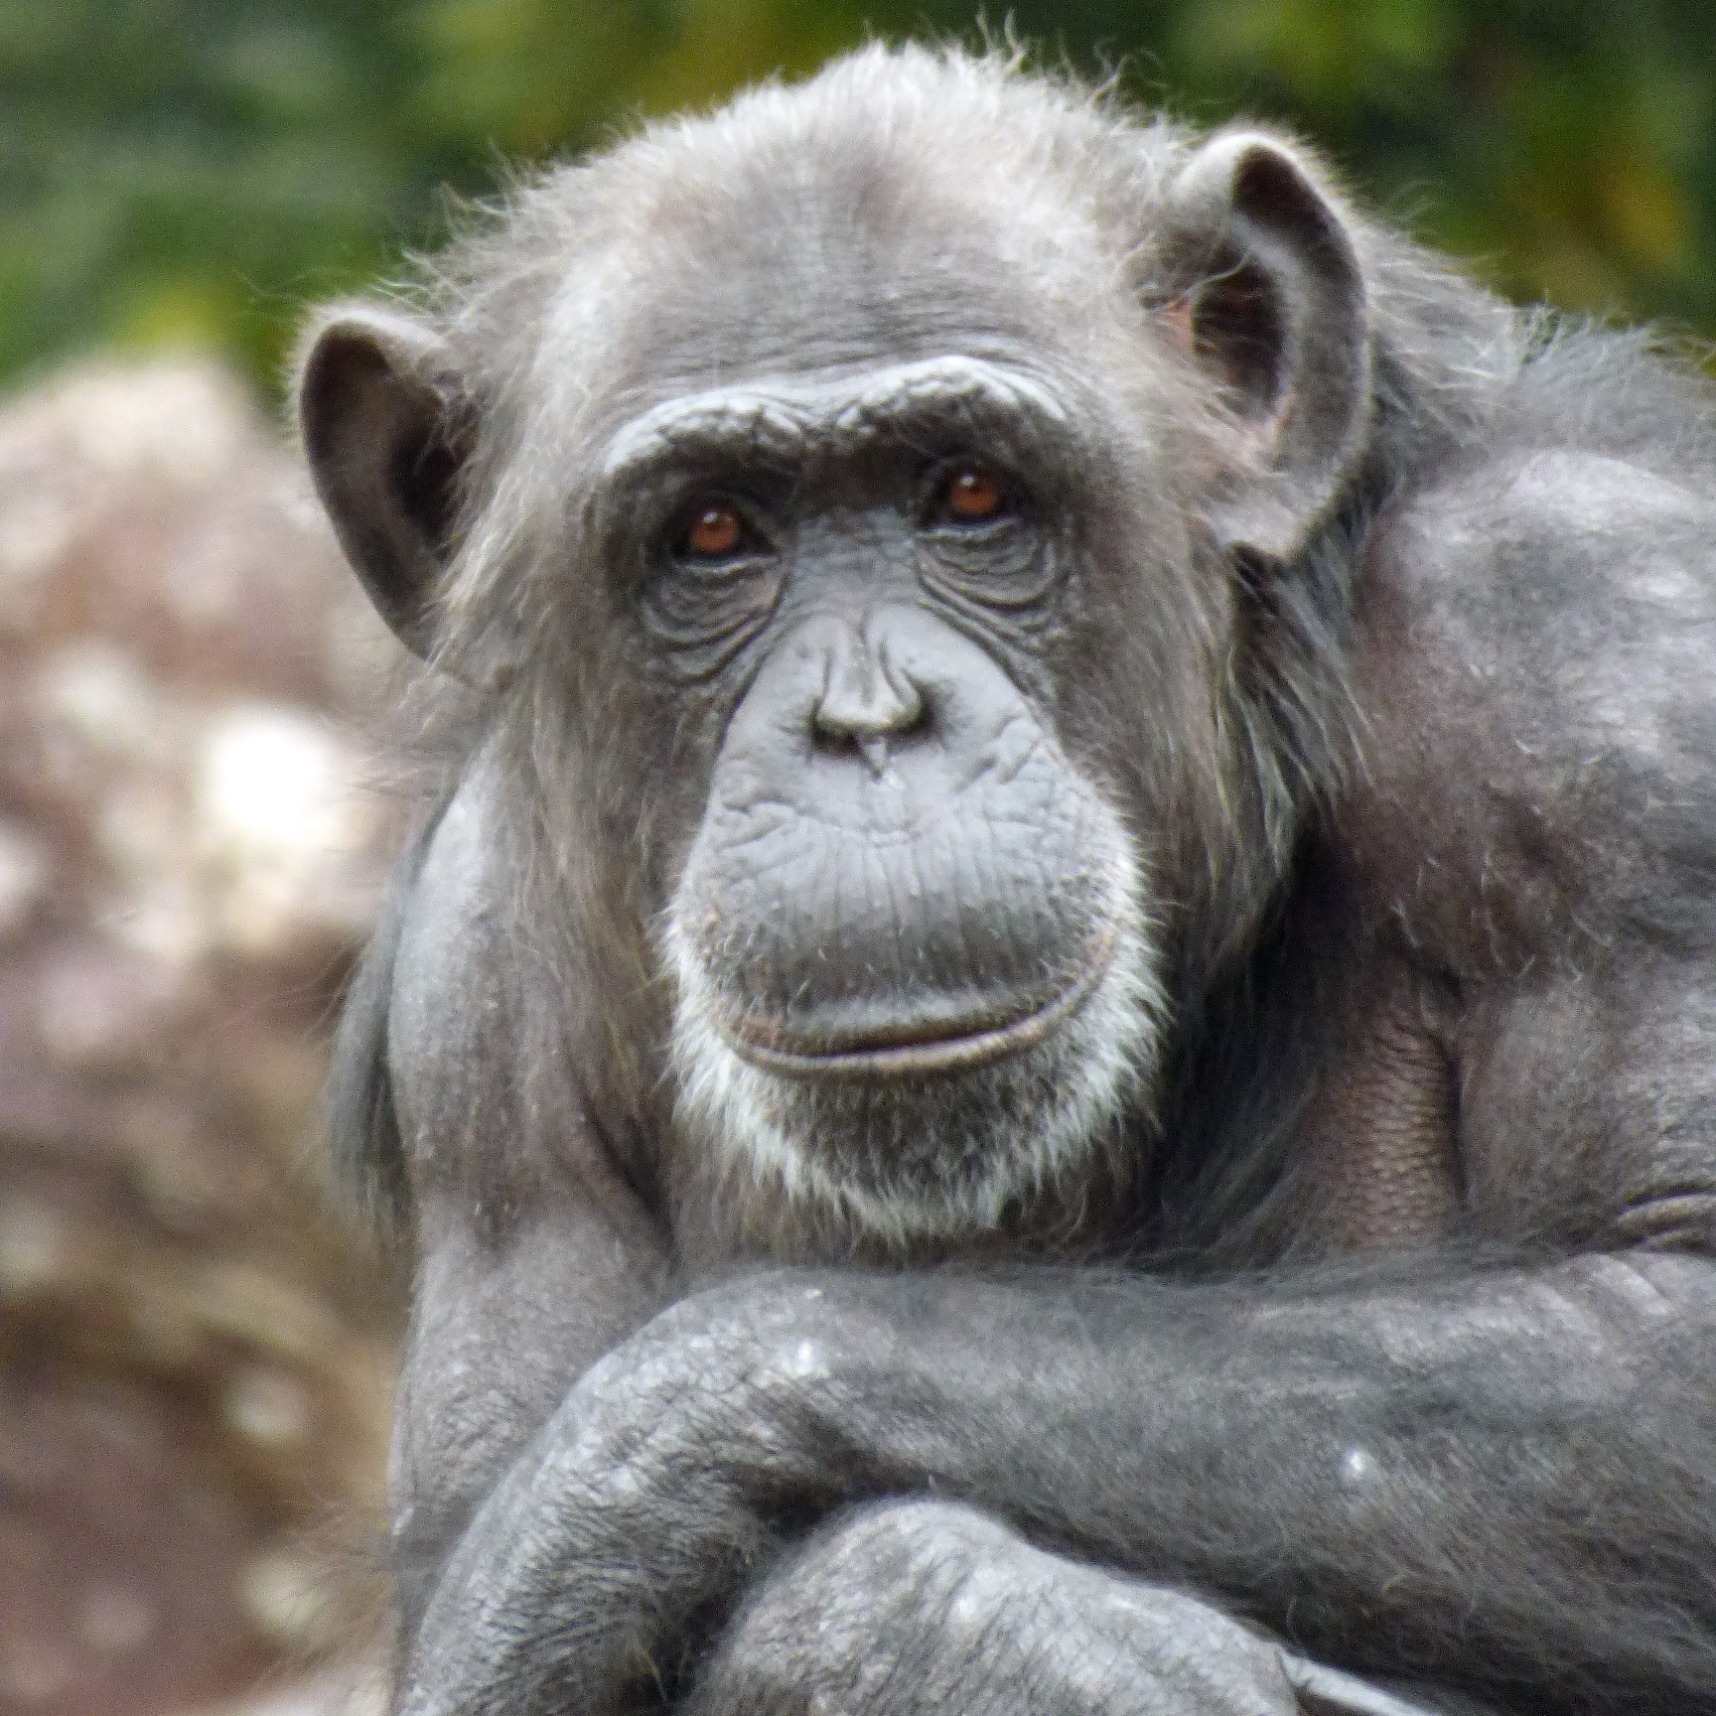 チンパンジー 熱帯の森 高知県立のいち動物公園 公式サイト 人も動物もいきいきと